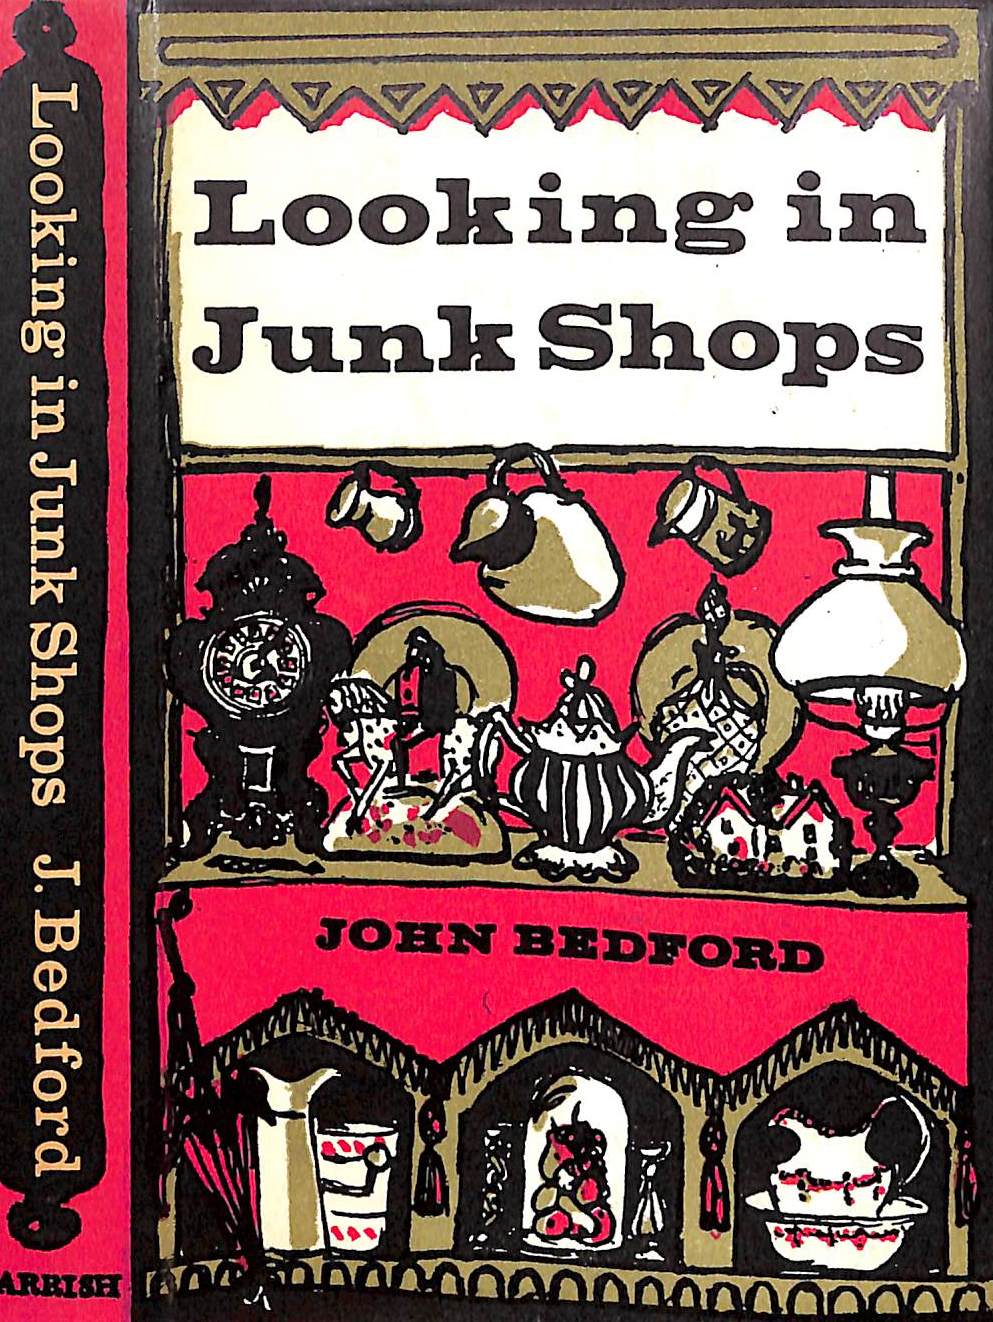 "Looking In Junk Shops" 1963 BEDFORD, John